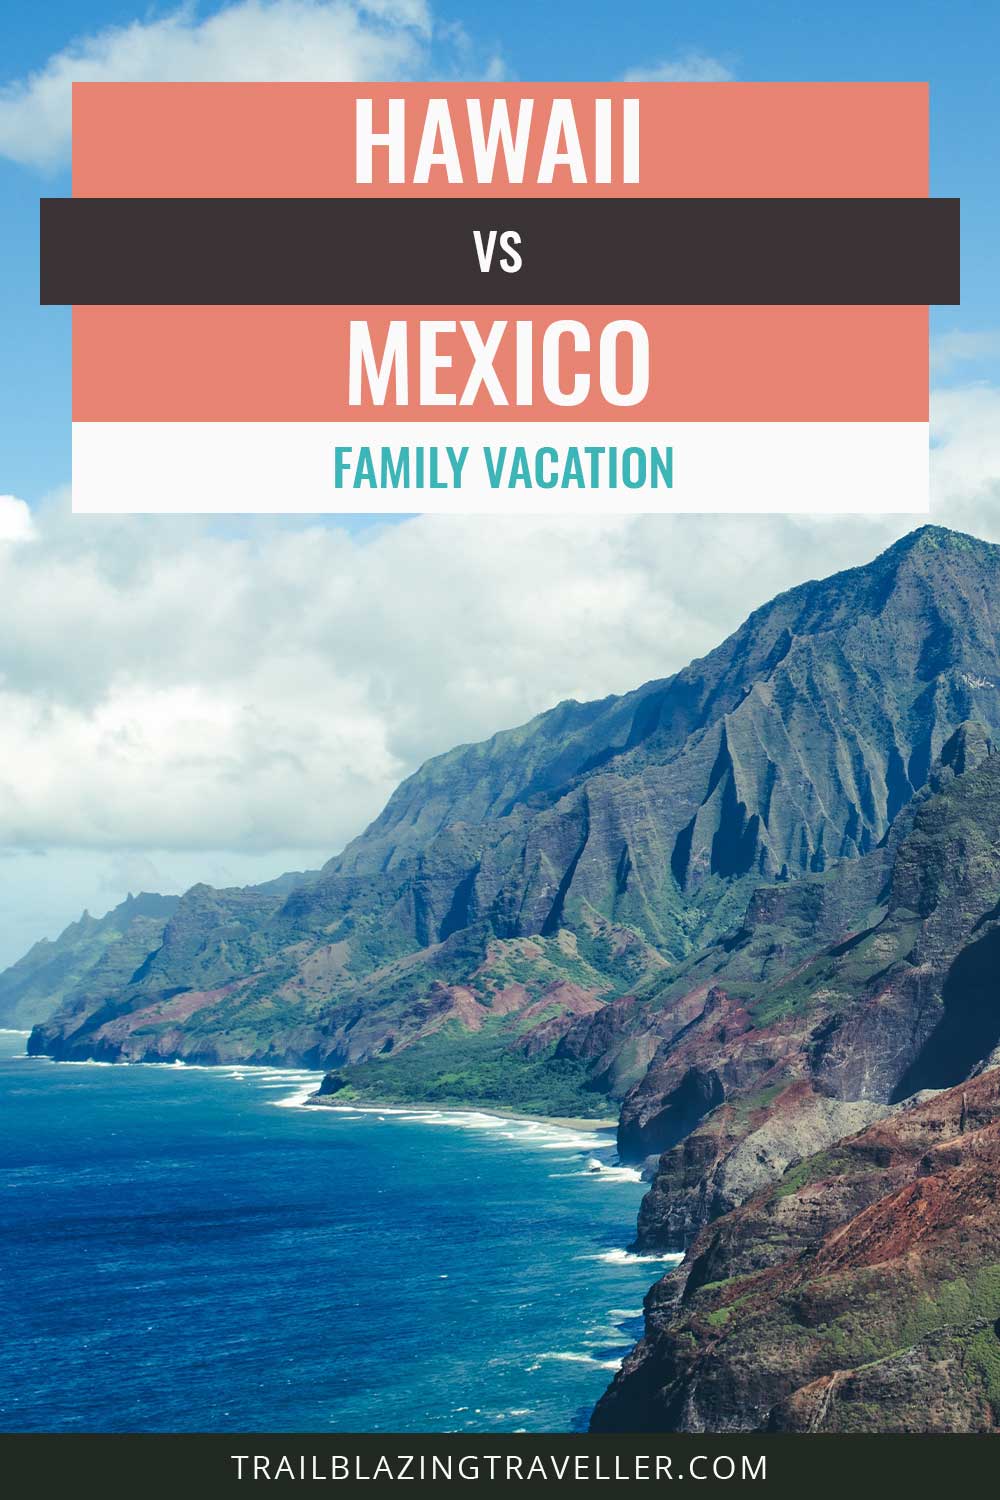 Hawaii vs. Mexico Family Vacation